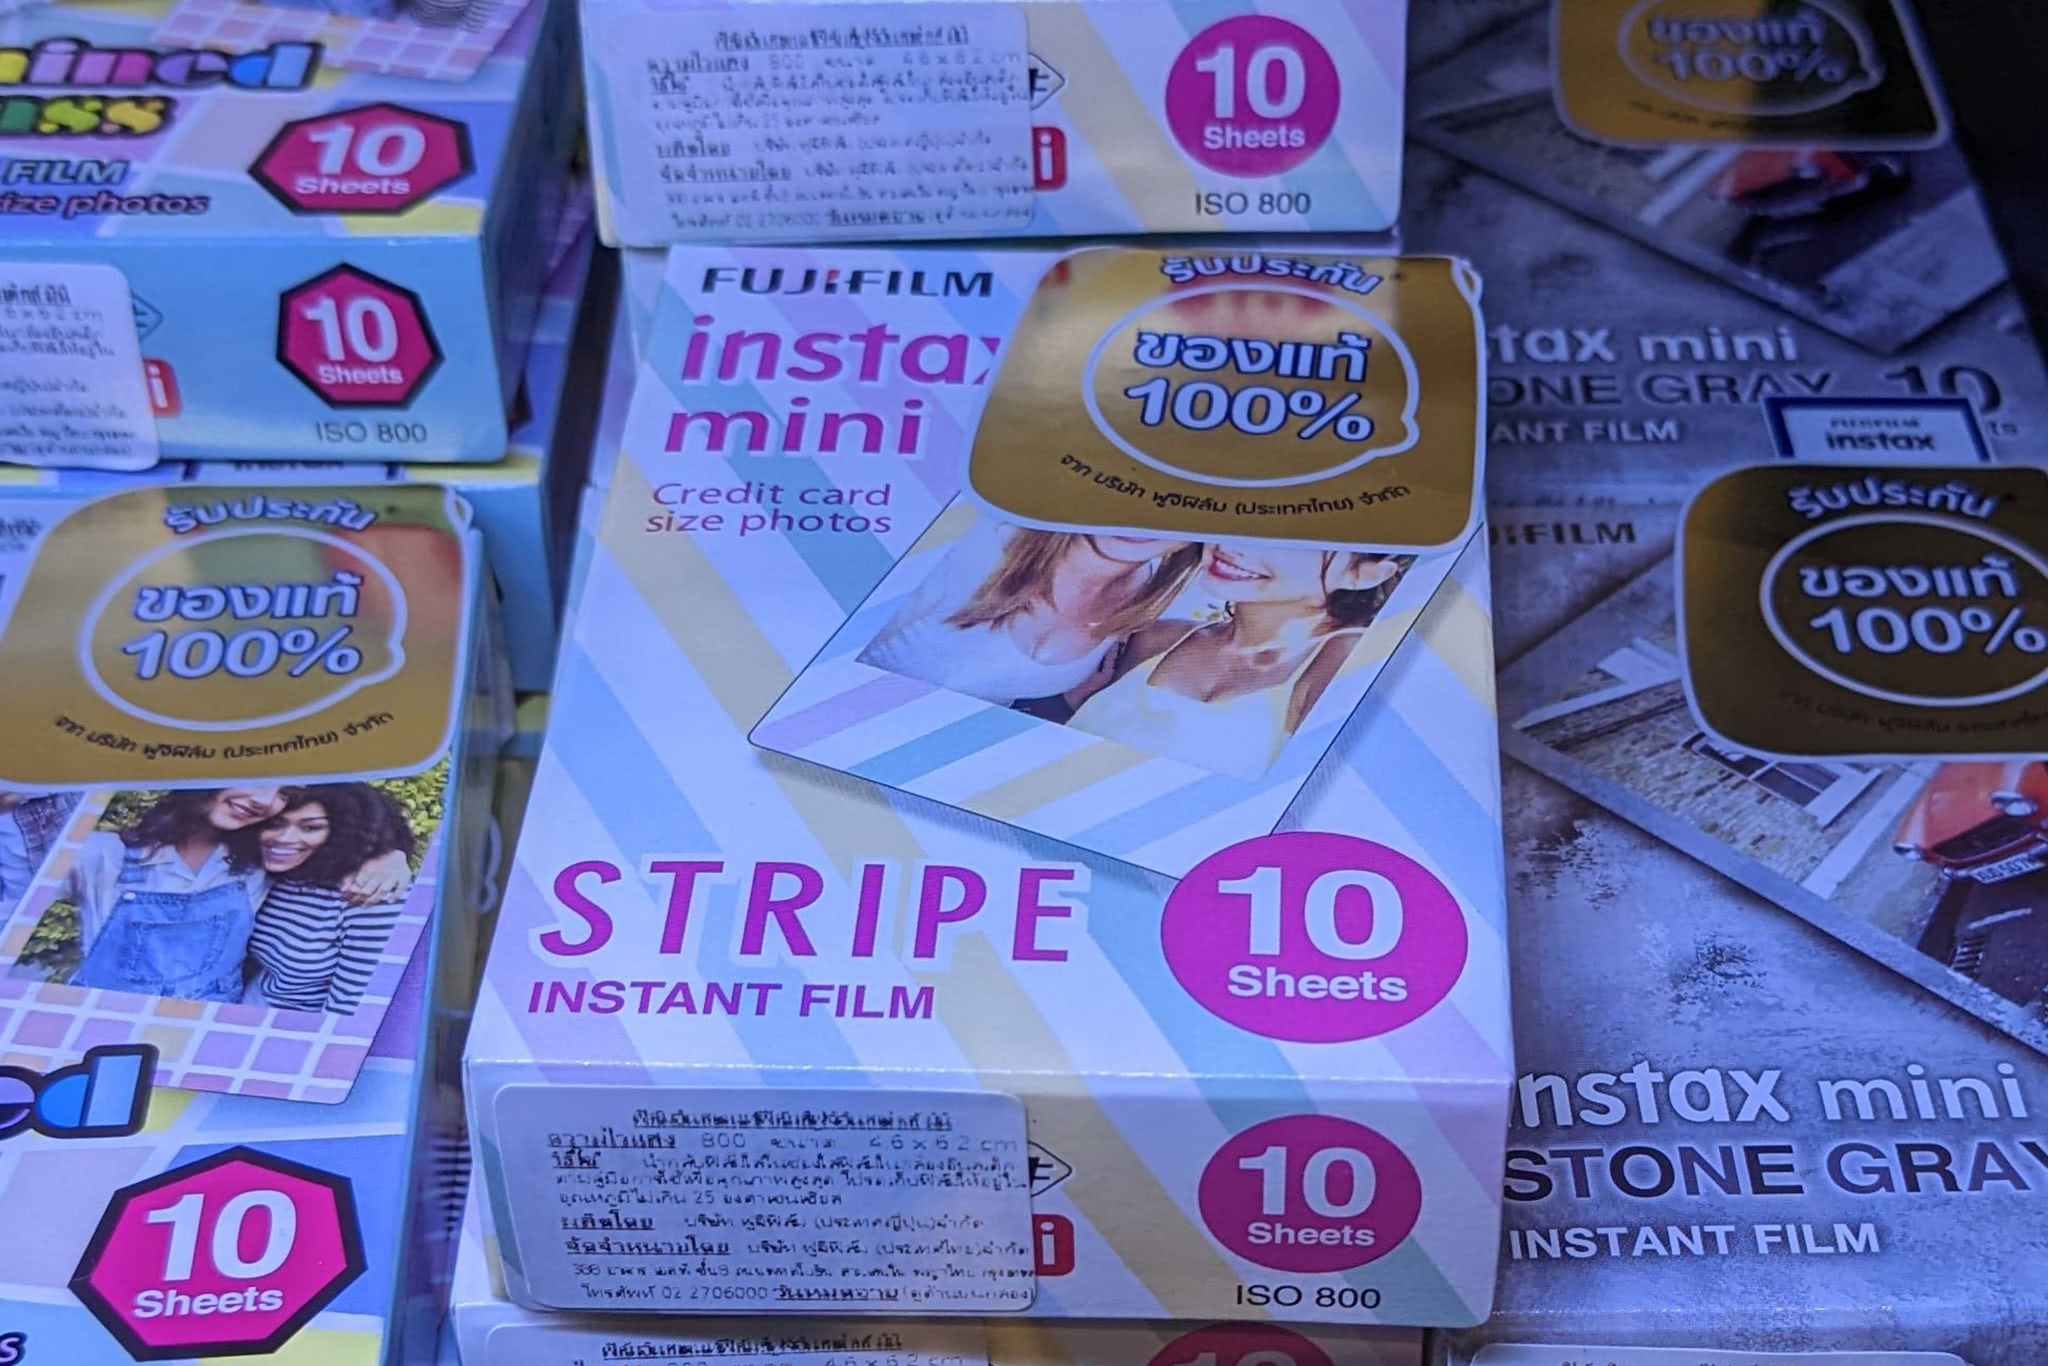 Fujifilm Instax Mini Stripe - The Ultimate Guide